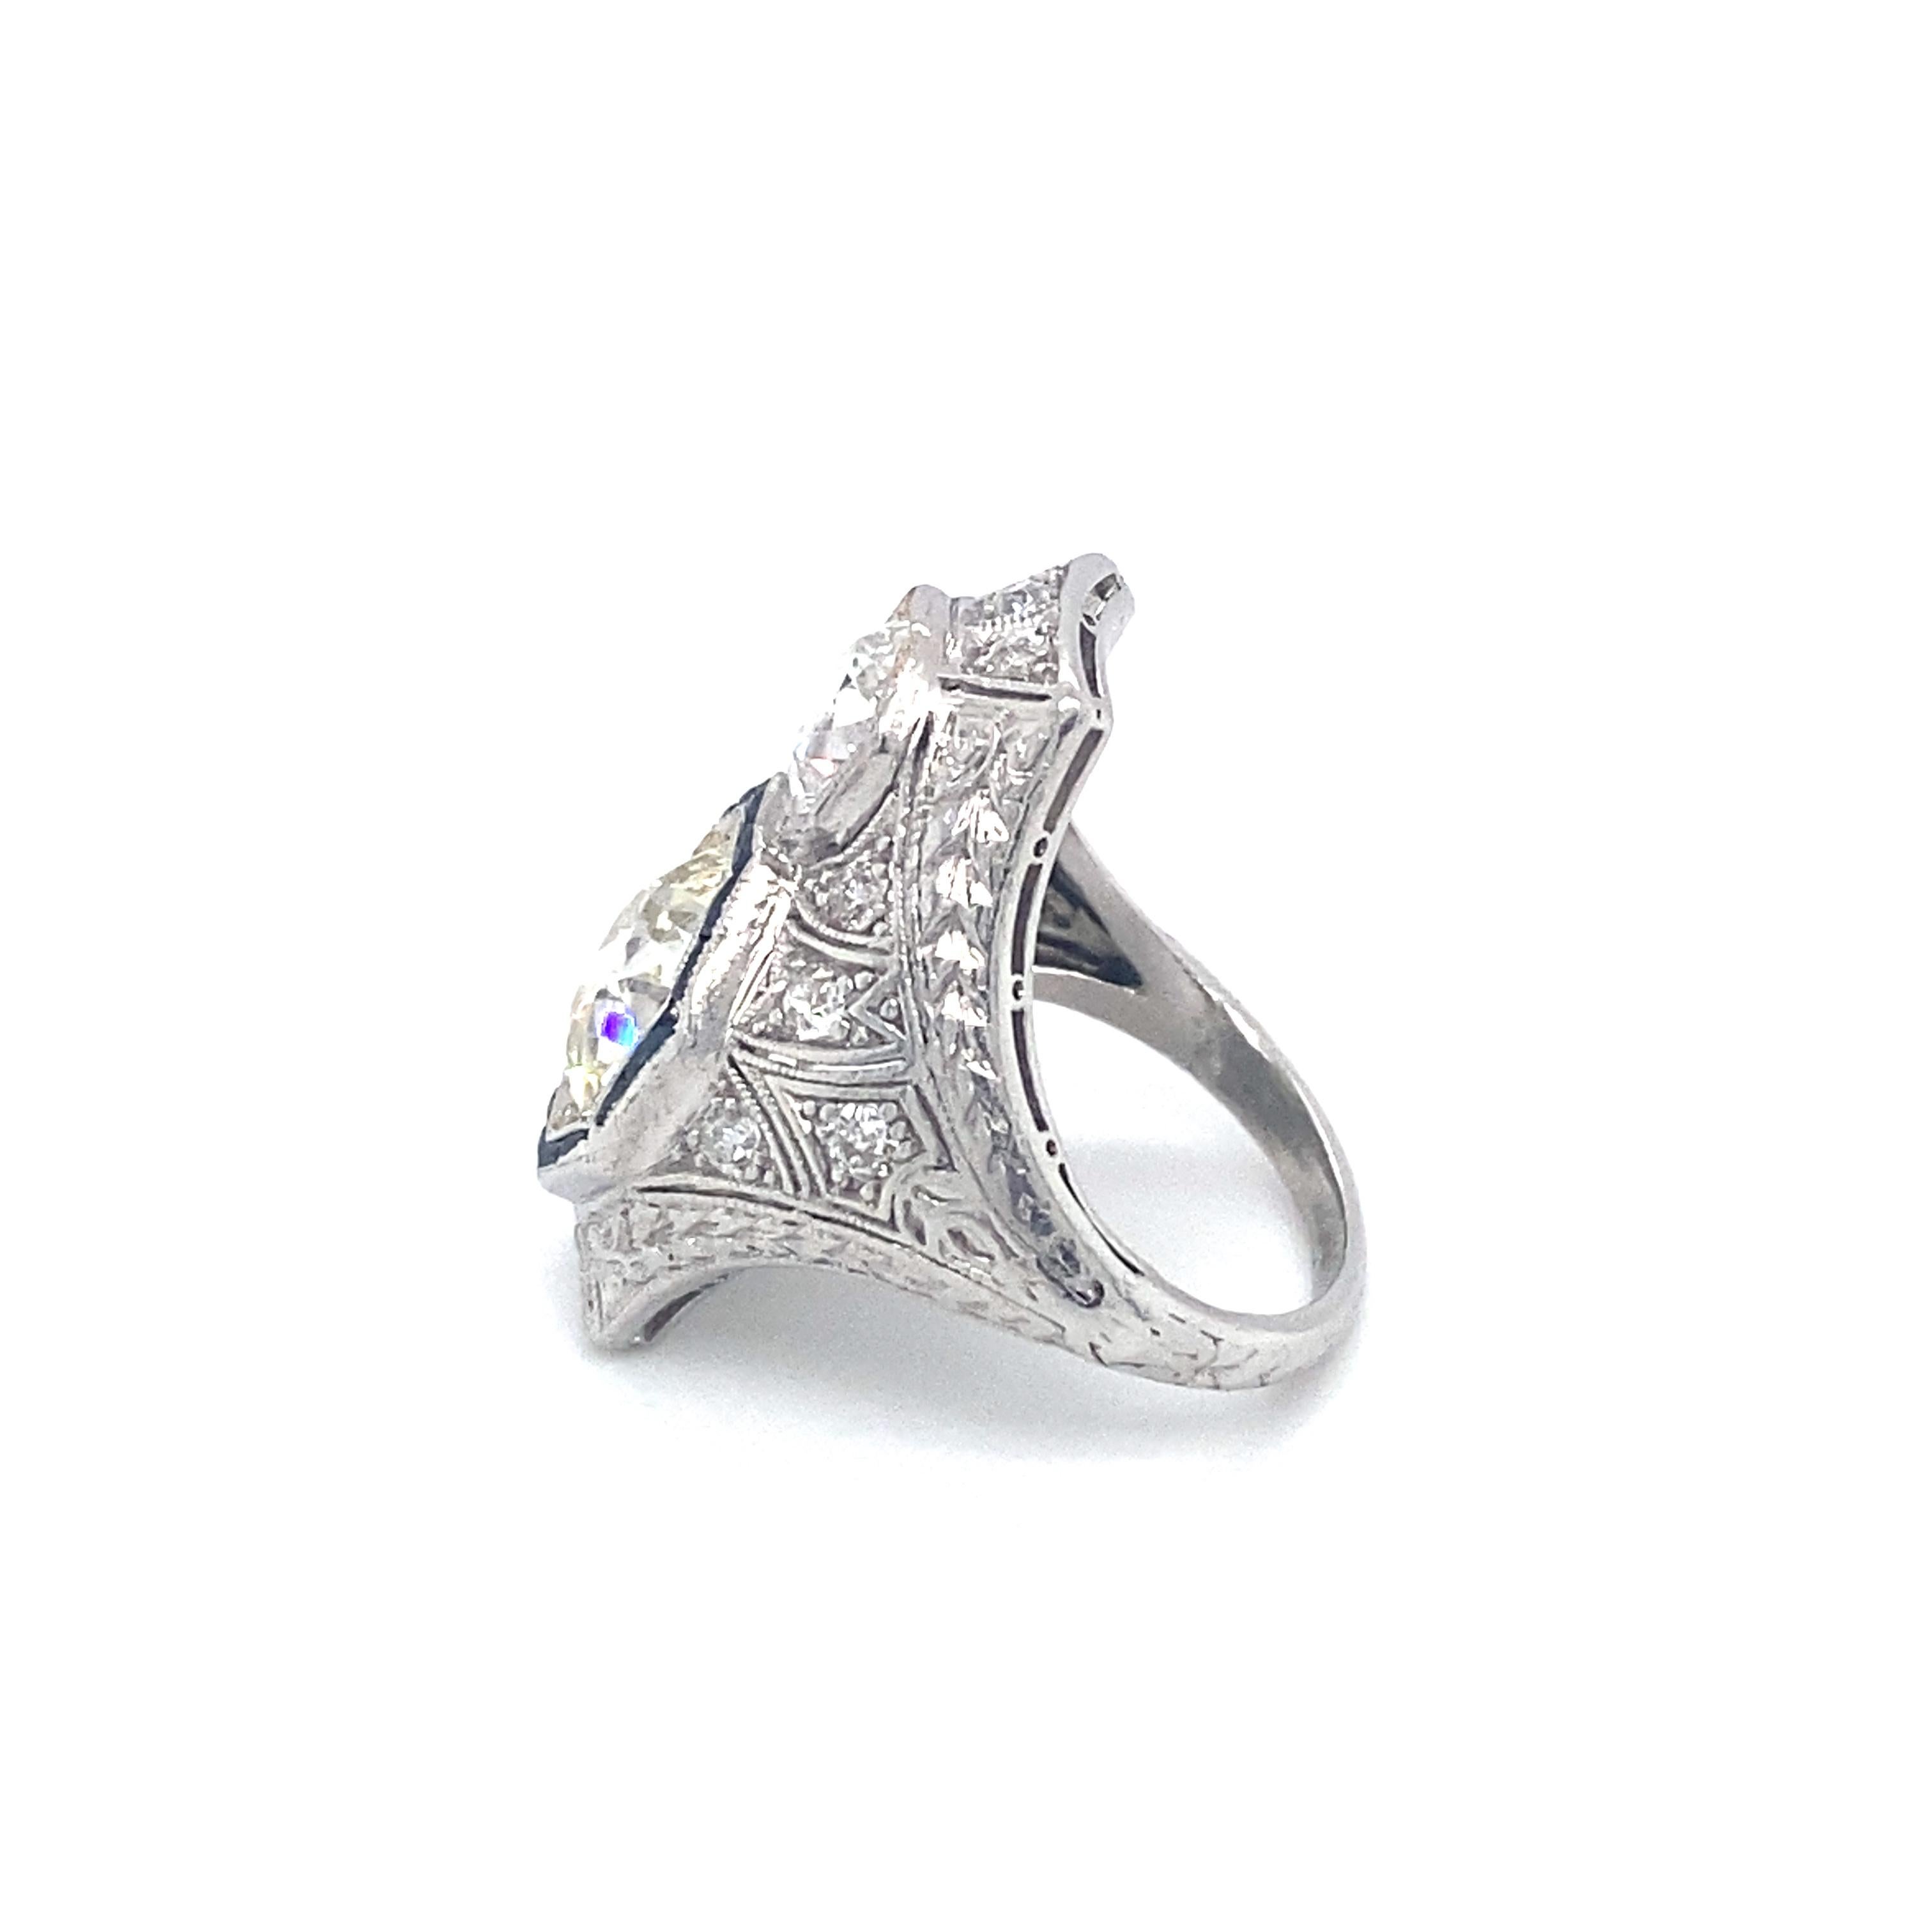 Artikel-Details: Dieser spektakuläre Ring hat einen großen 2,50-Karat-Diamanten mit altem europäischem Schliff und etwa 1,20 Karat an Akzentdiamanten und Saphiren. Es ist verziert, exquisit und kühn! Die aus Platin gefertigte Uhr ist ein großartiges